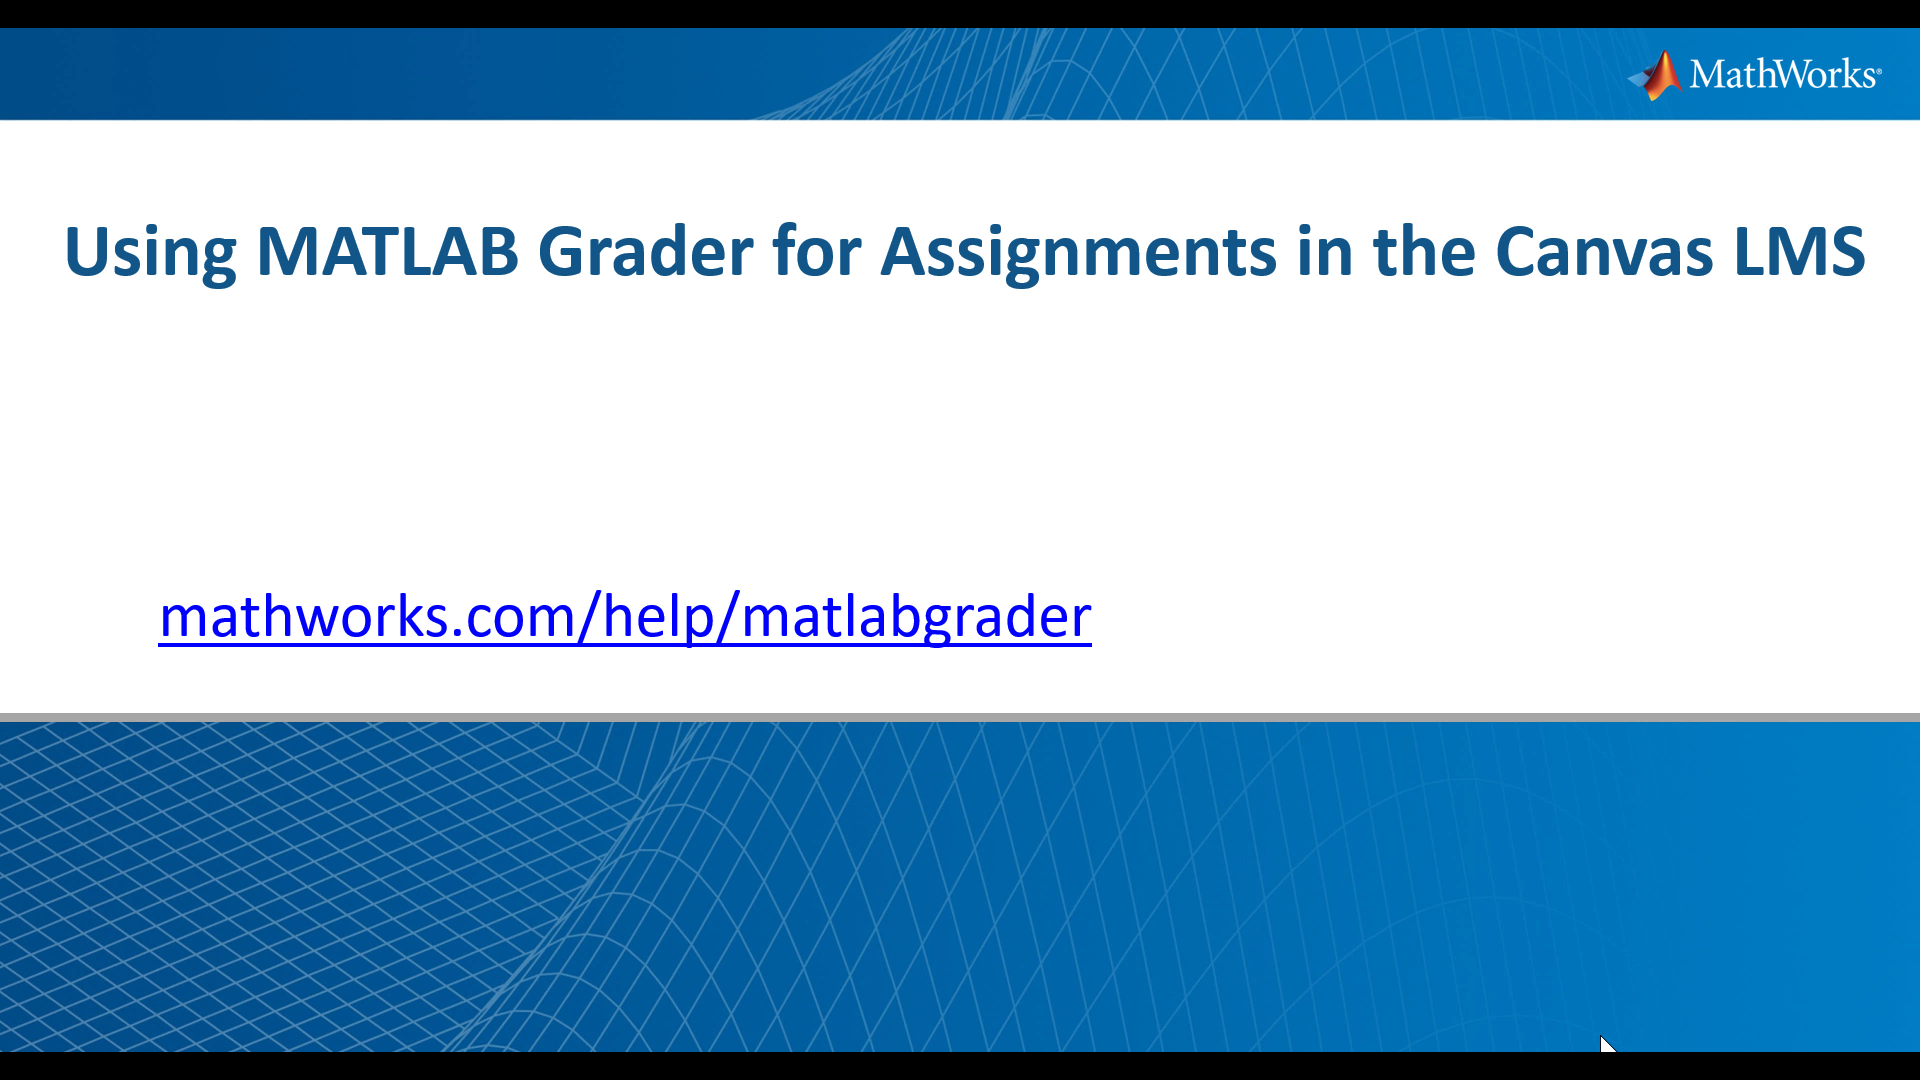 学习如何教师可以添加自动评分基于MATLAB的作业到他们的画布学习管理系统使用MATLAB Grader。